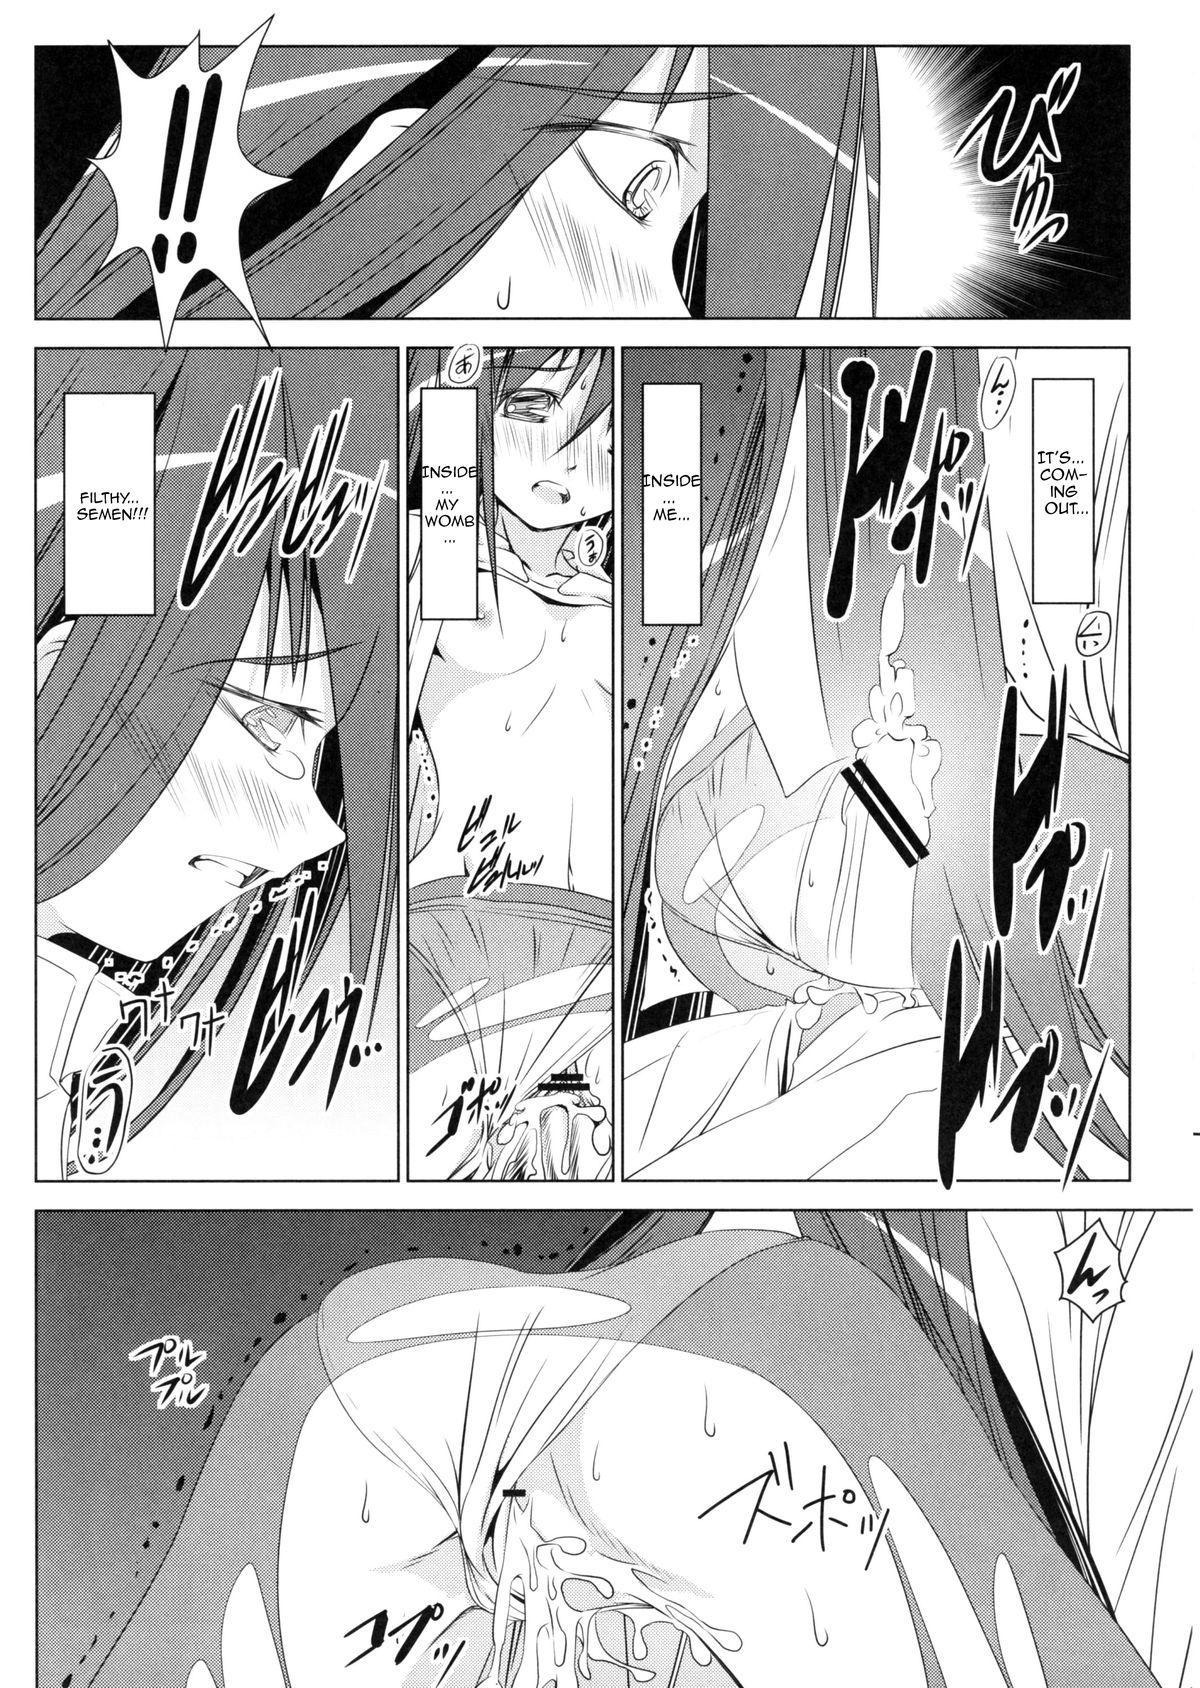 Dorm Homura's Humiliation - Puella magi madoka magica Cumshots - Page 9